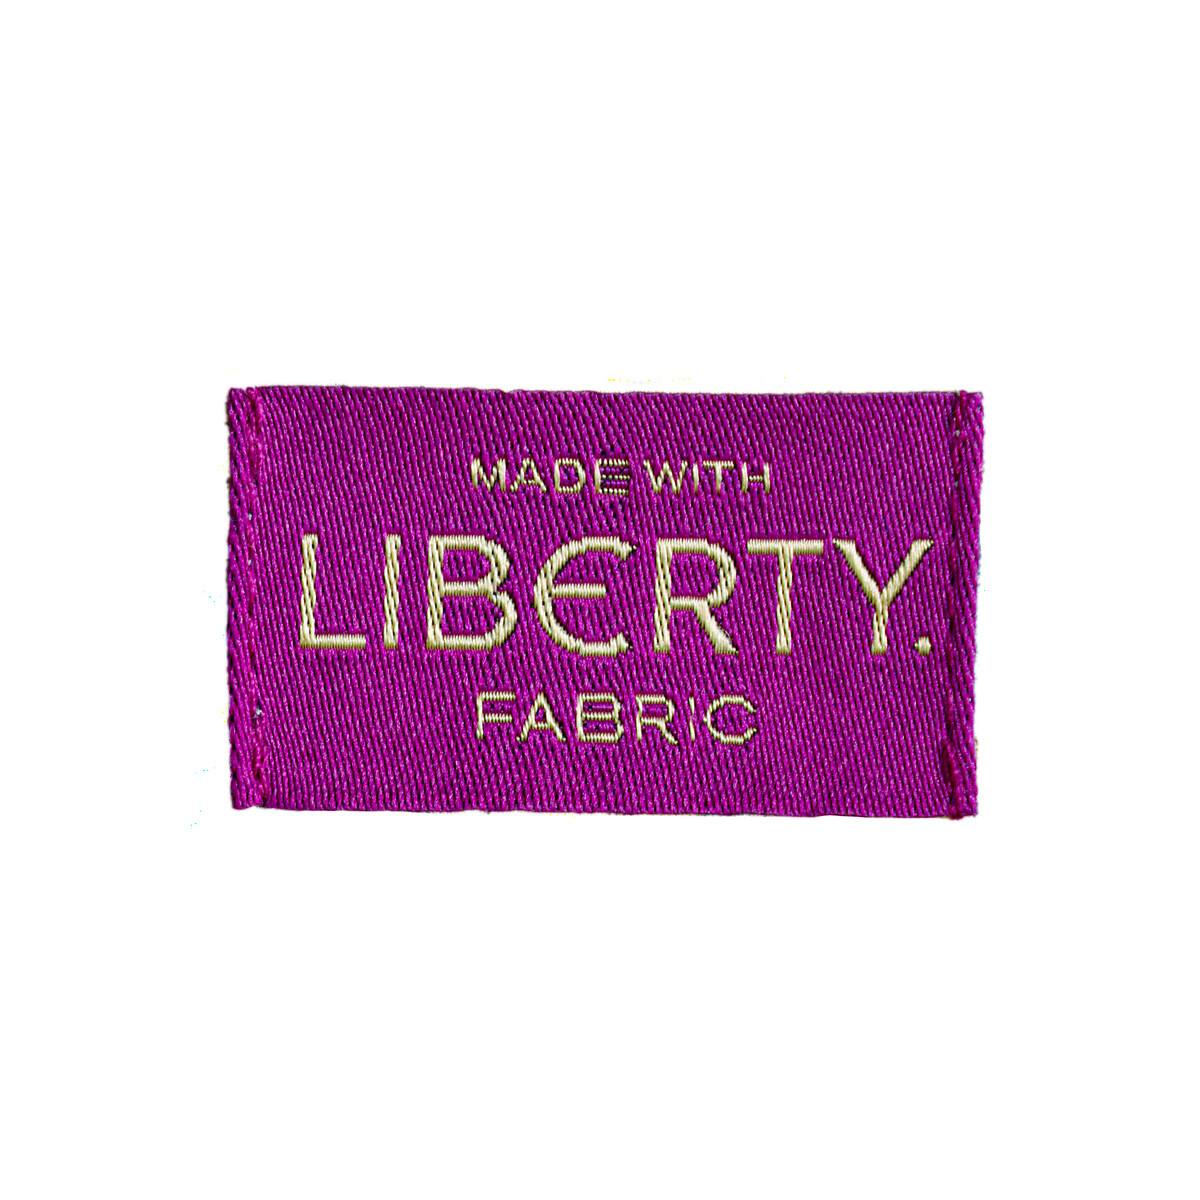 Шорты С принтом Liberty Fabrics 42 (FR) - 48 (RUS) другие LaRedoute, размер 42 (FR) - 48 (RUS) Шорты С принтом Liberty Fabrics 42 (FR) - 48 (RUS) другие - фото 5